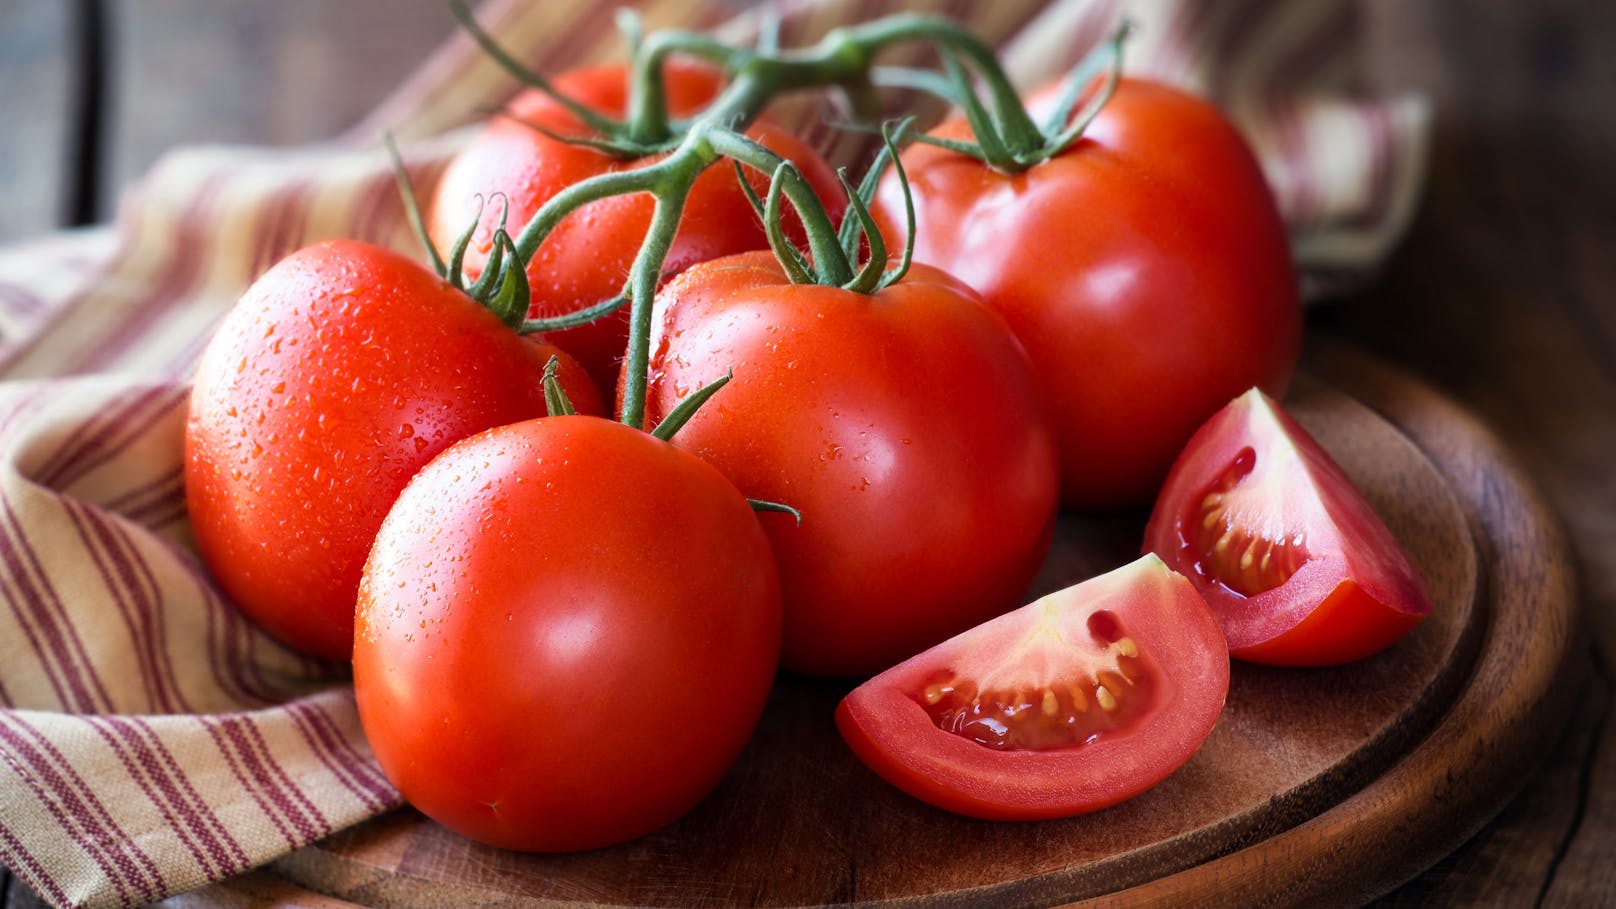 Lycopin ist das wichtigste Antioxidans, das die <strong>Tomate</strong> zu einem der besten entzündungshemmenden Lebensmittel macht. Es wird am besten in Verbindung mit einer Fettquelle aufgenommen und scheint besser bioverfügbar zu sein, wenn es gekocht wird – ein Beispiel dafür, dass roh nicht immer am besten ist.